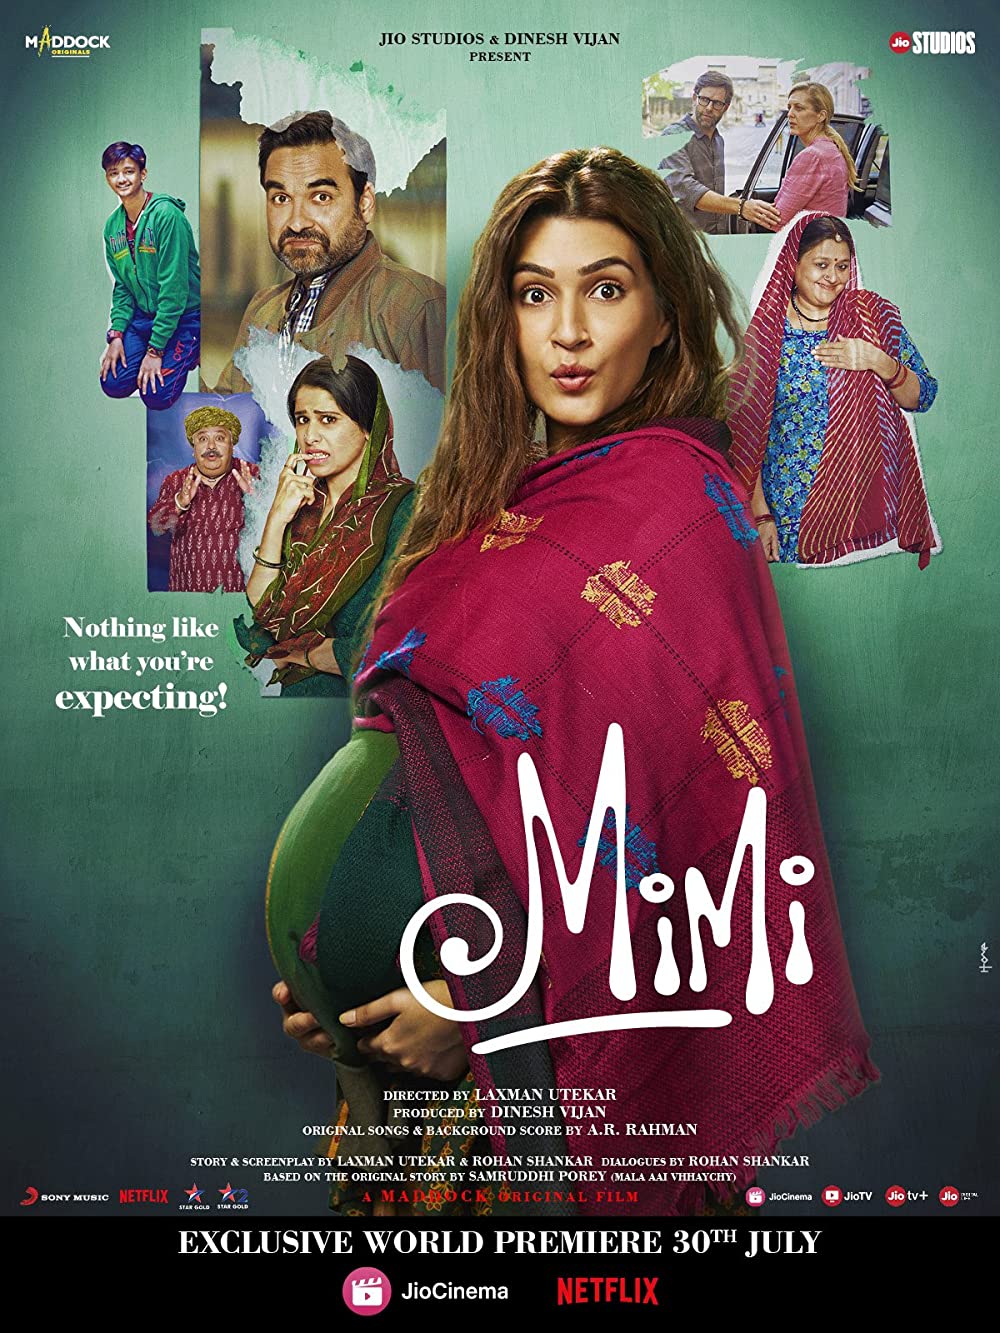 9 Film India kisahkan perjuangan ibu, Mimi menuai pujian